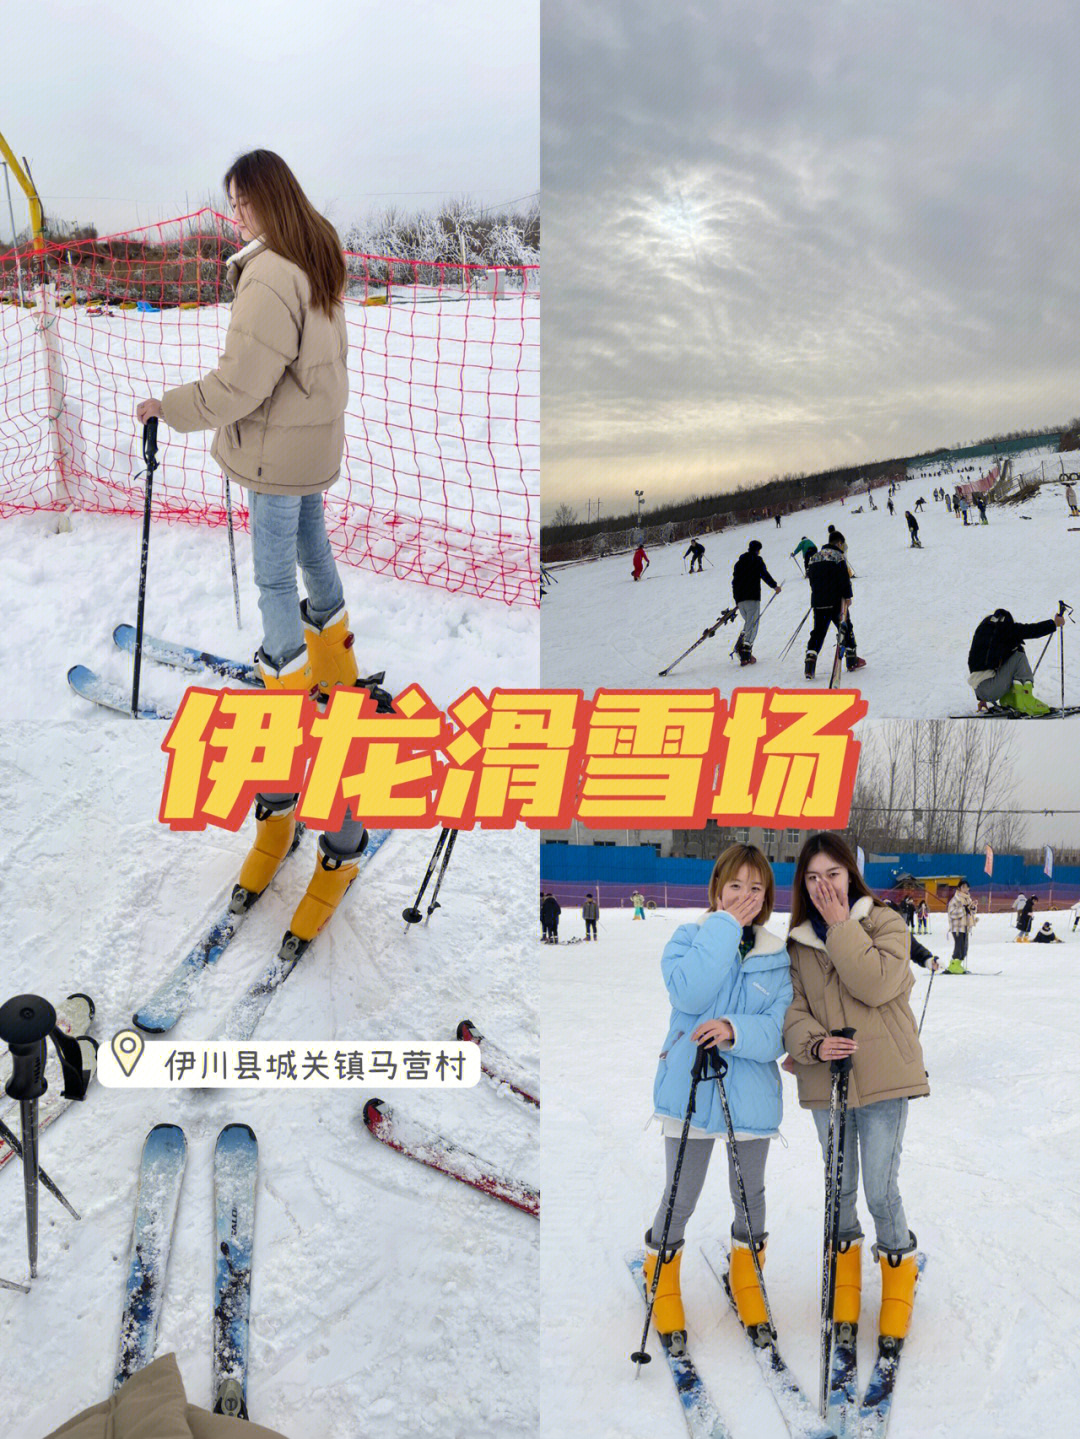 92:伊龙滑雪场99:伊川县城关镇马营村很早就想去滑雪了 这次刚好